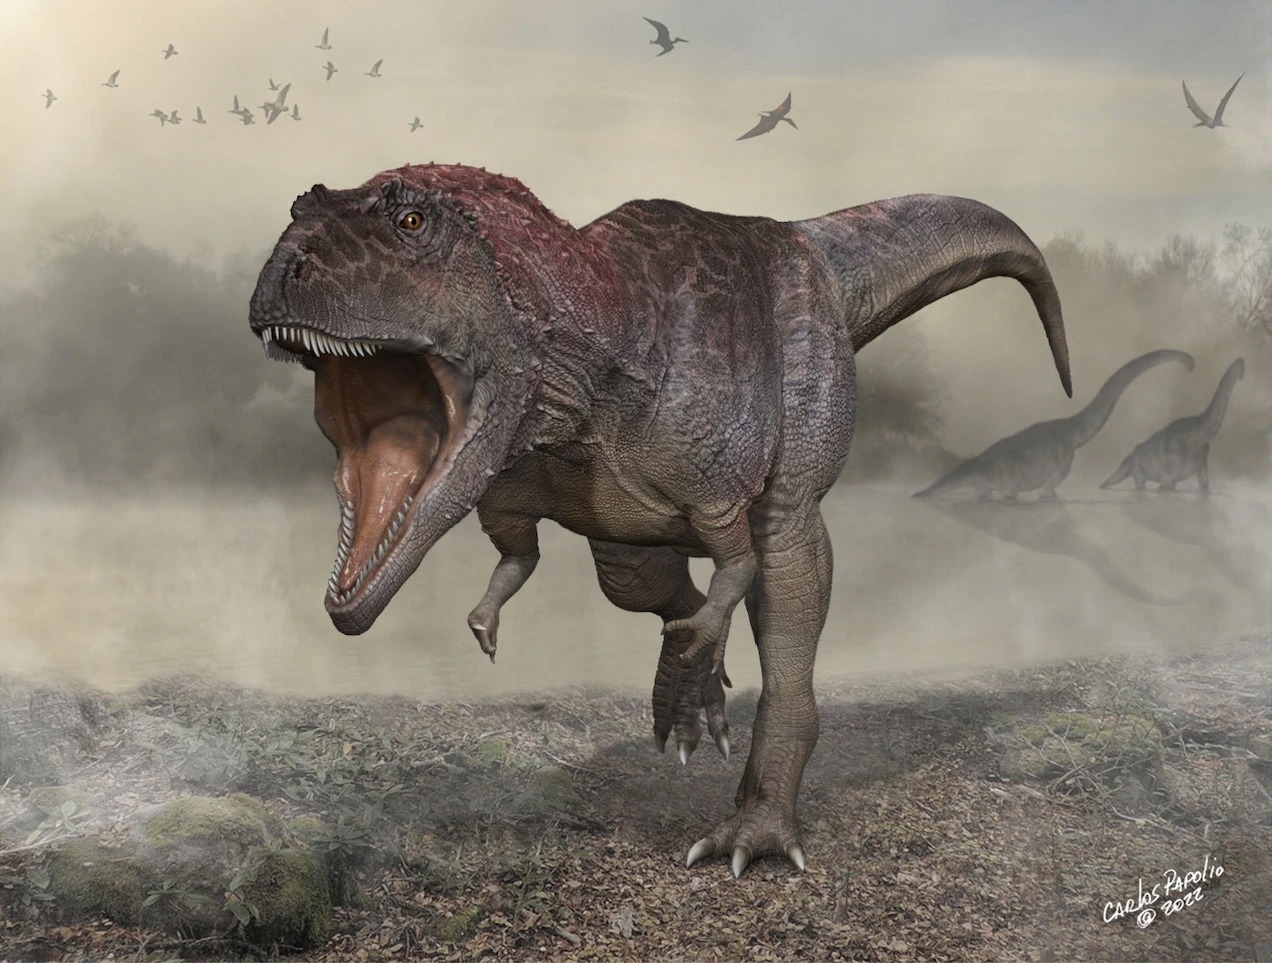 巨米拉西斯龍是一種大約1億年前生活在阿根廷的巨型獸腳類恐龍，牠的前肢與巨大的身體與頭顱相形之下很小。牠的輪廓與霸王龍相似，而後者要到數千萬年以後才會出現。ILLUSTRATION BY CARLOS PAPOLIO